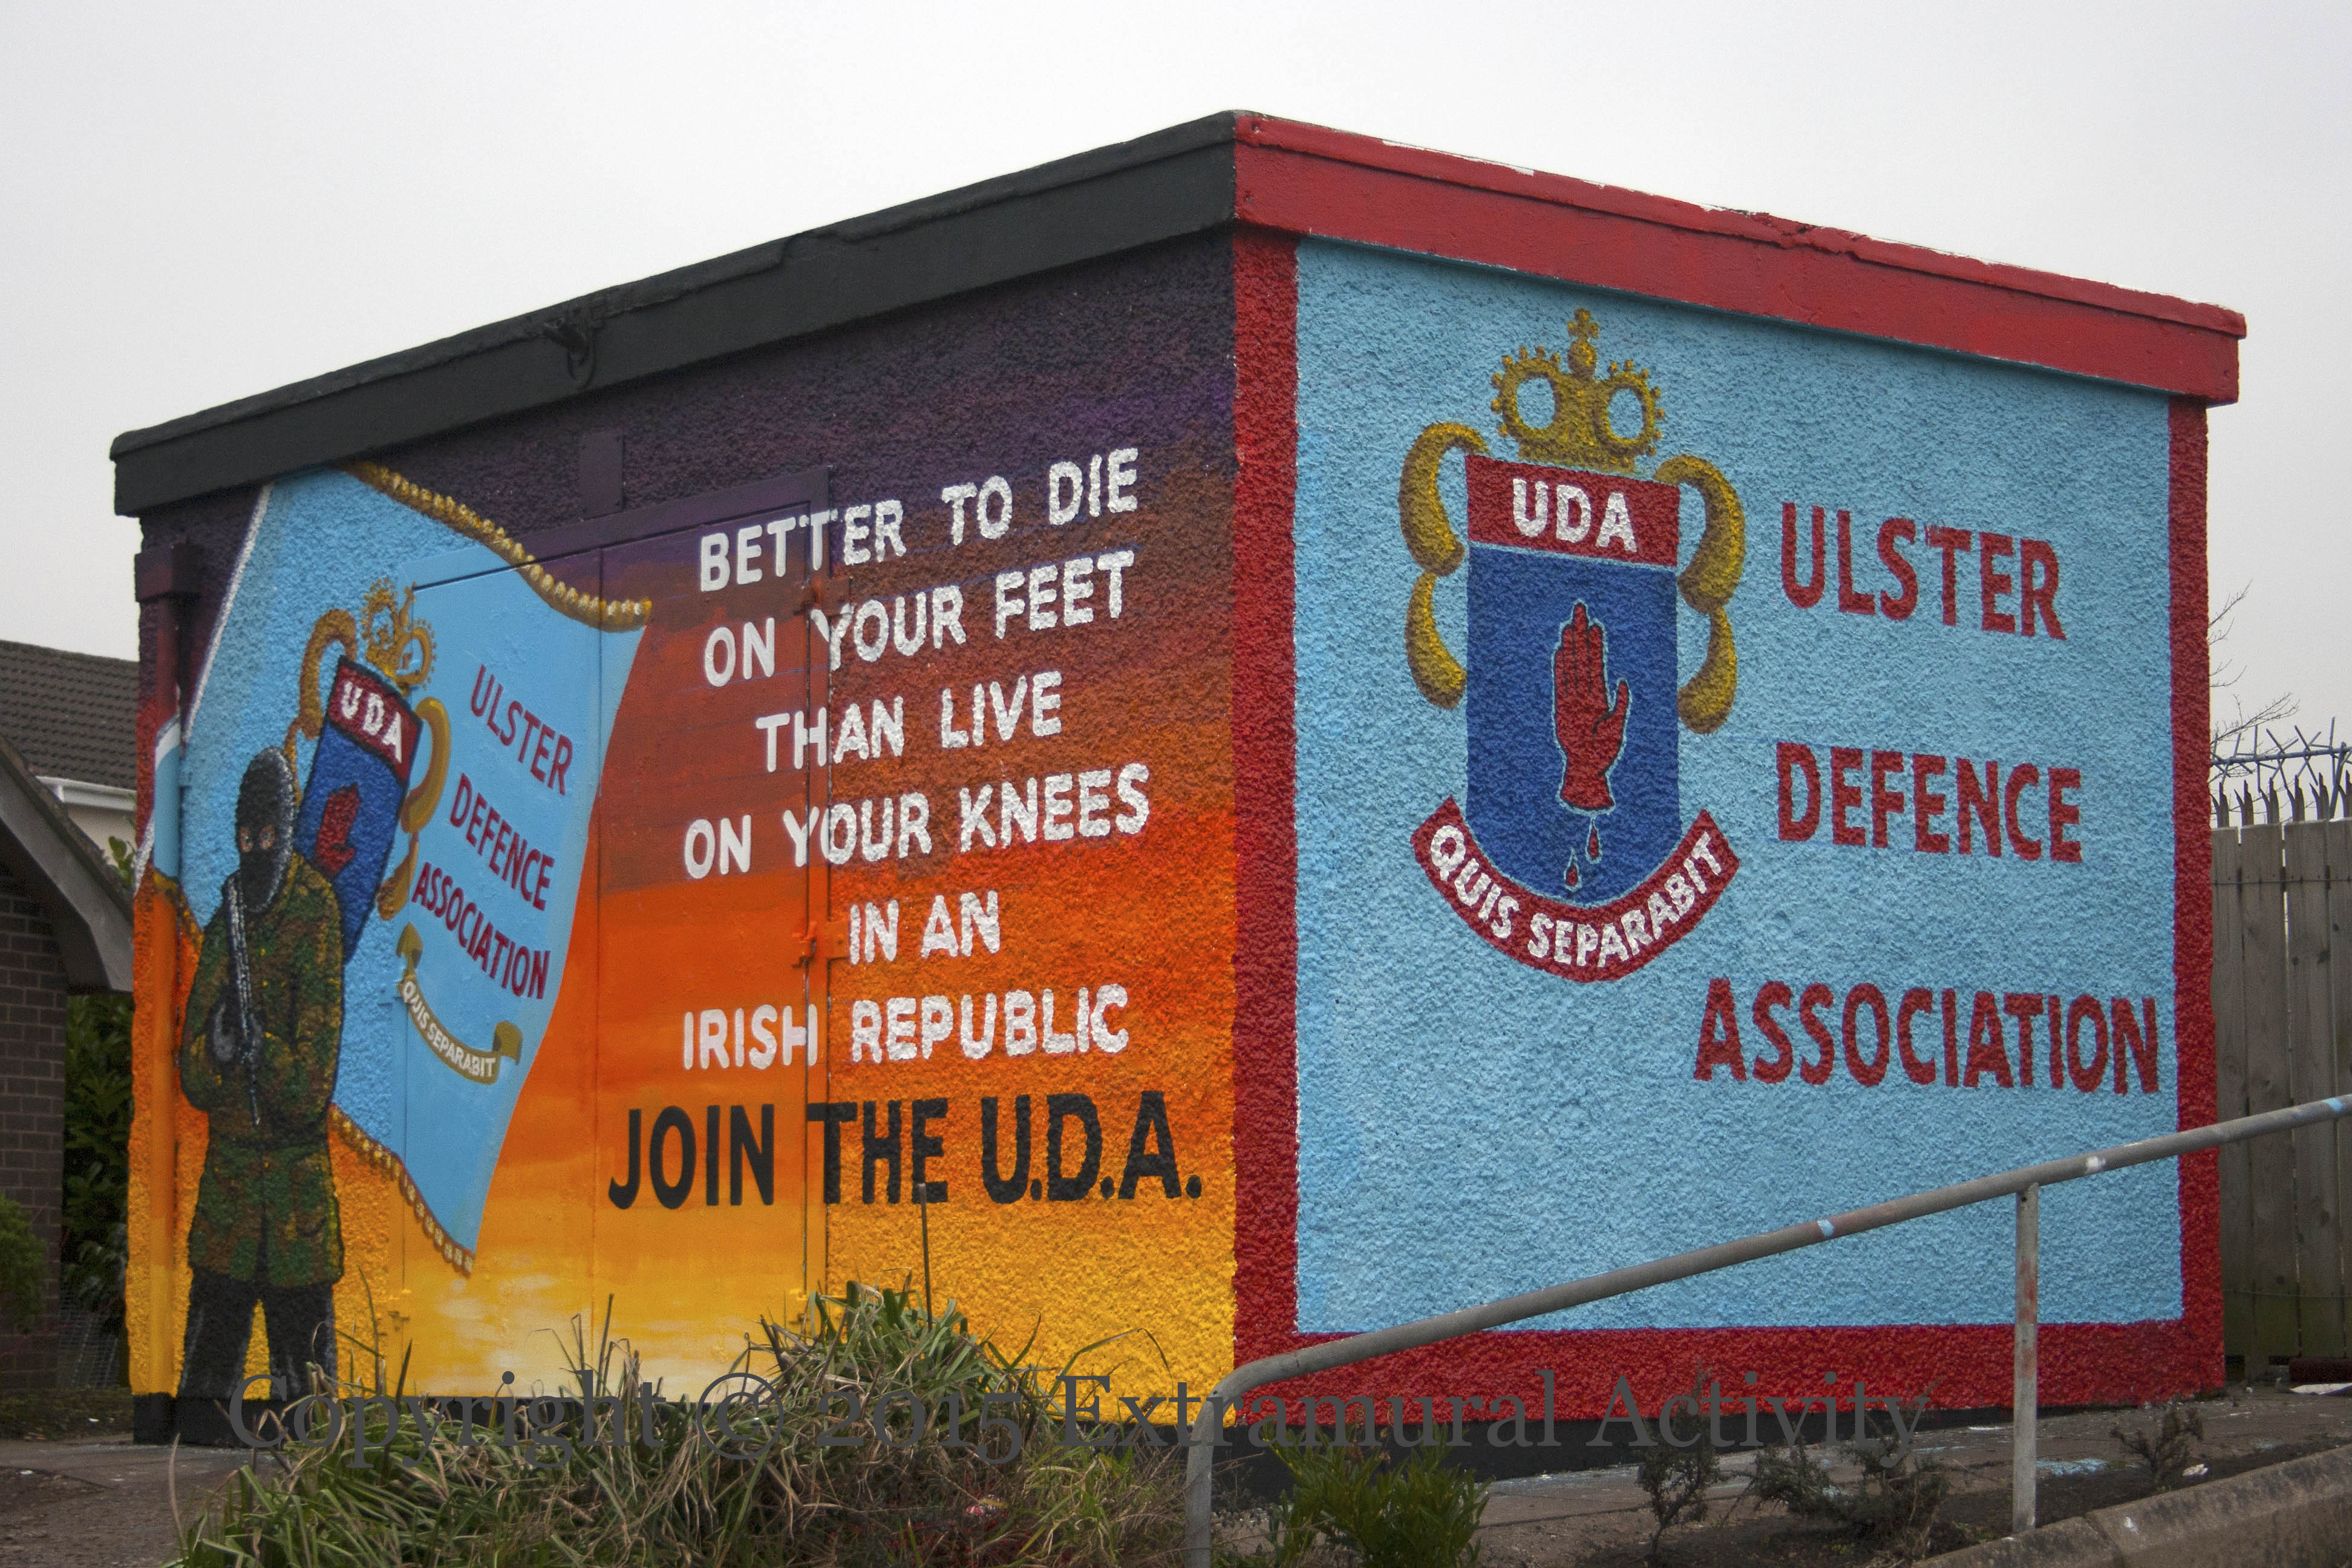 UDA | Ulster Defence Association